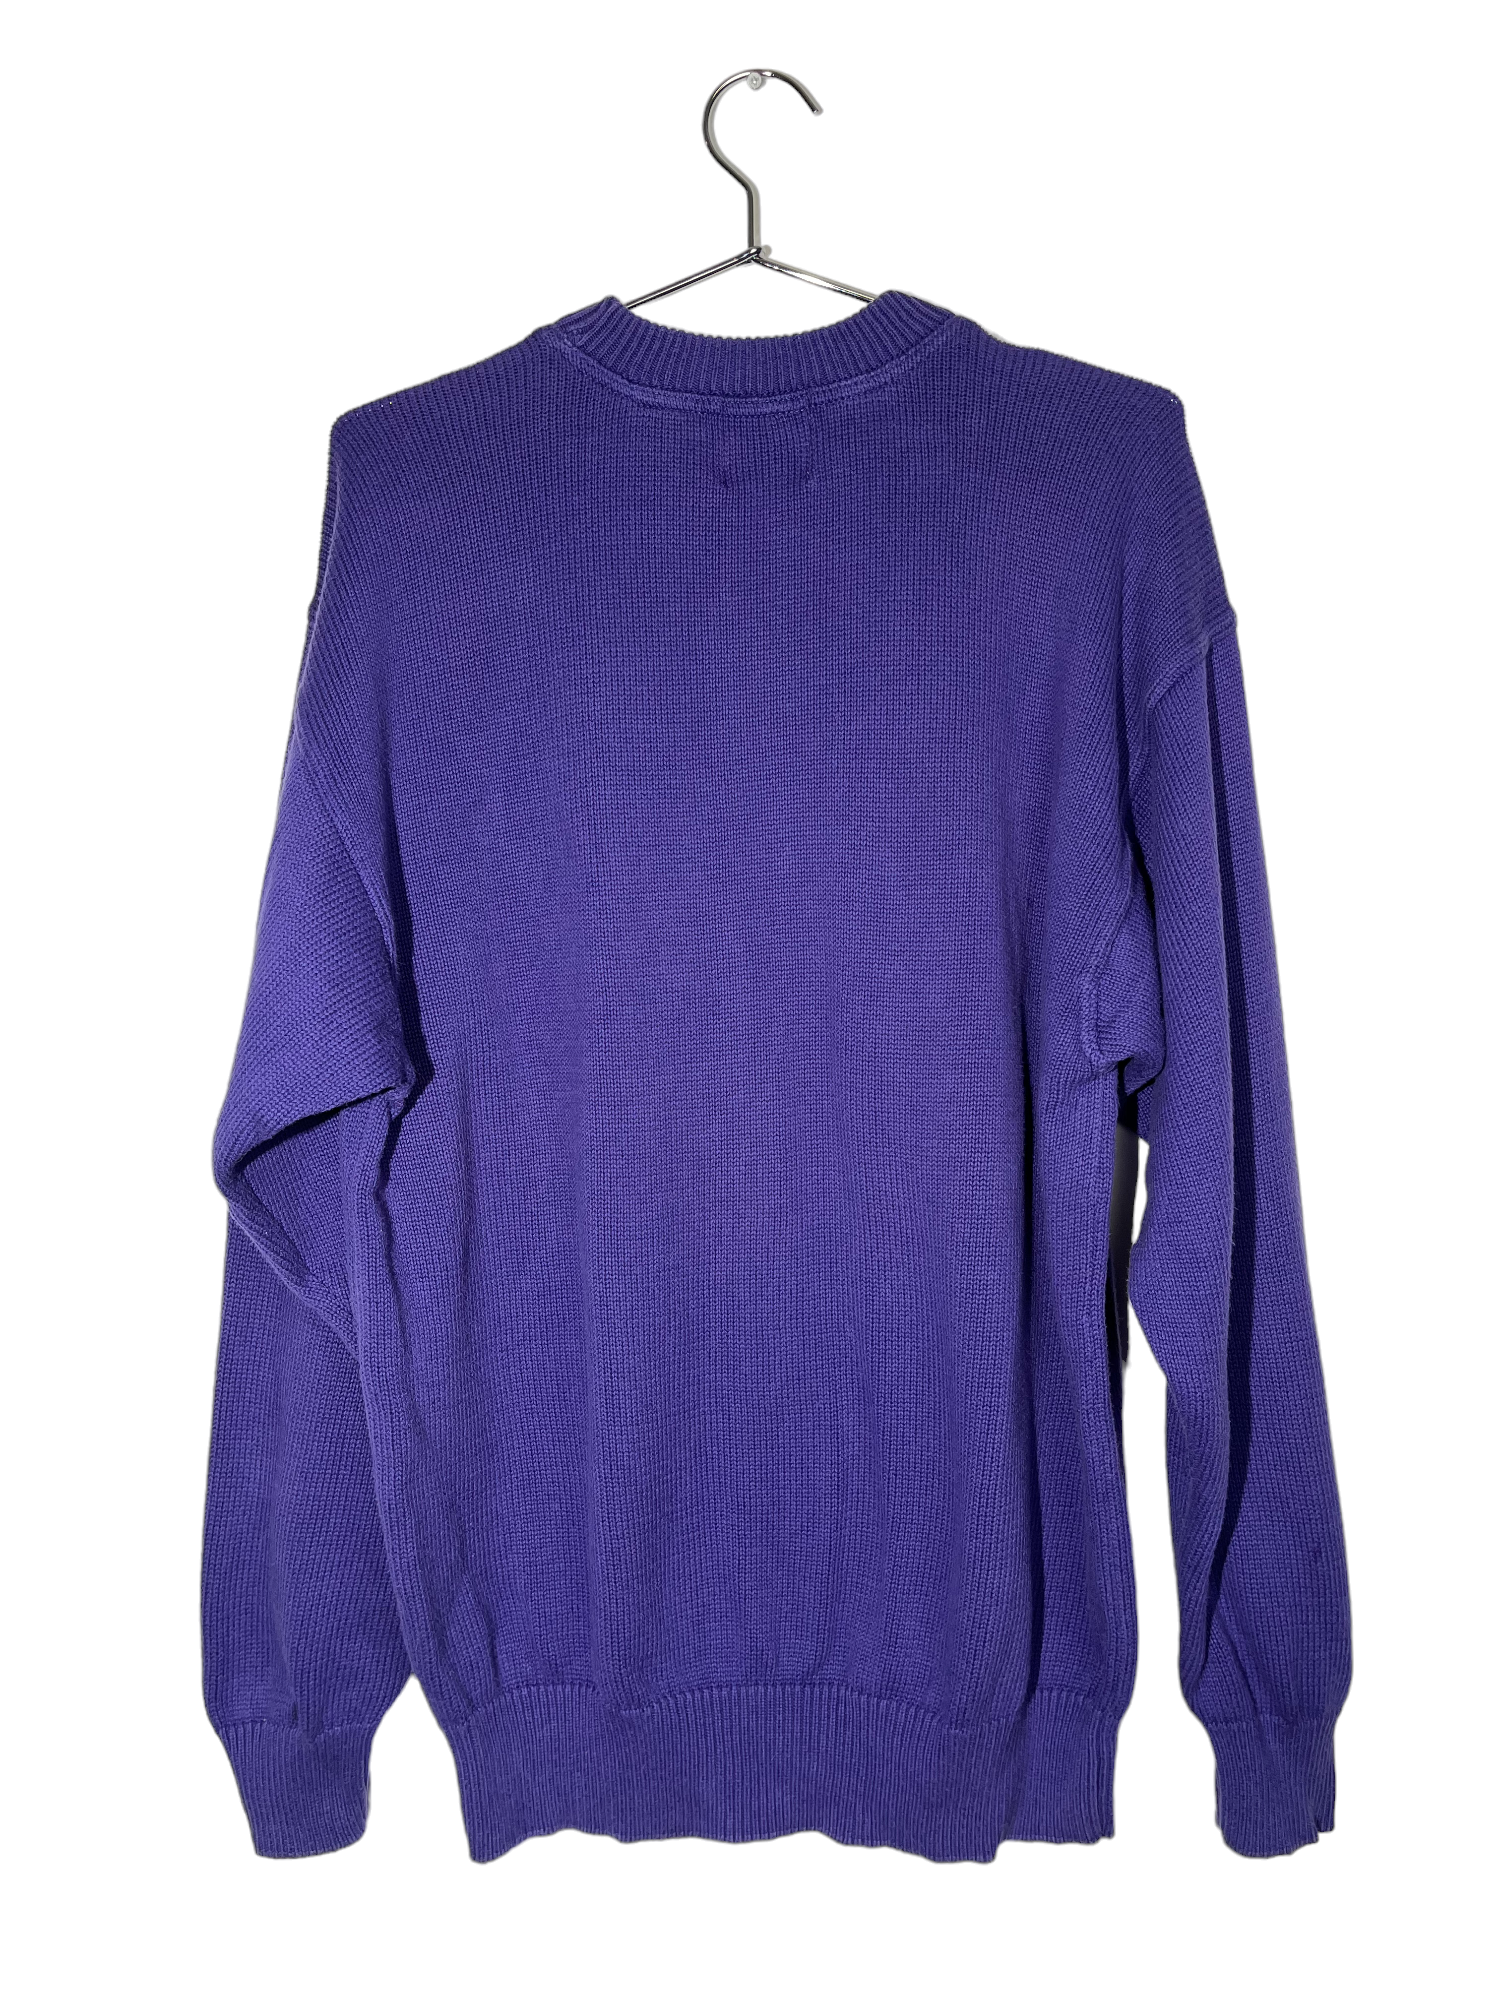 Leo Best Knitwear Purple Crewneck Sweater